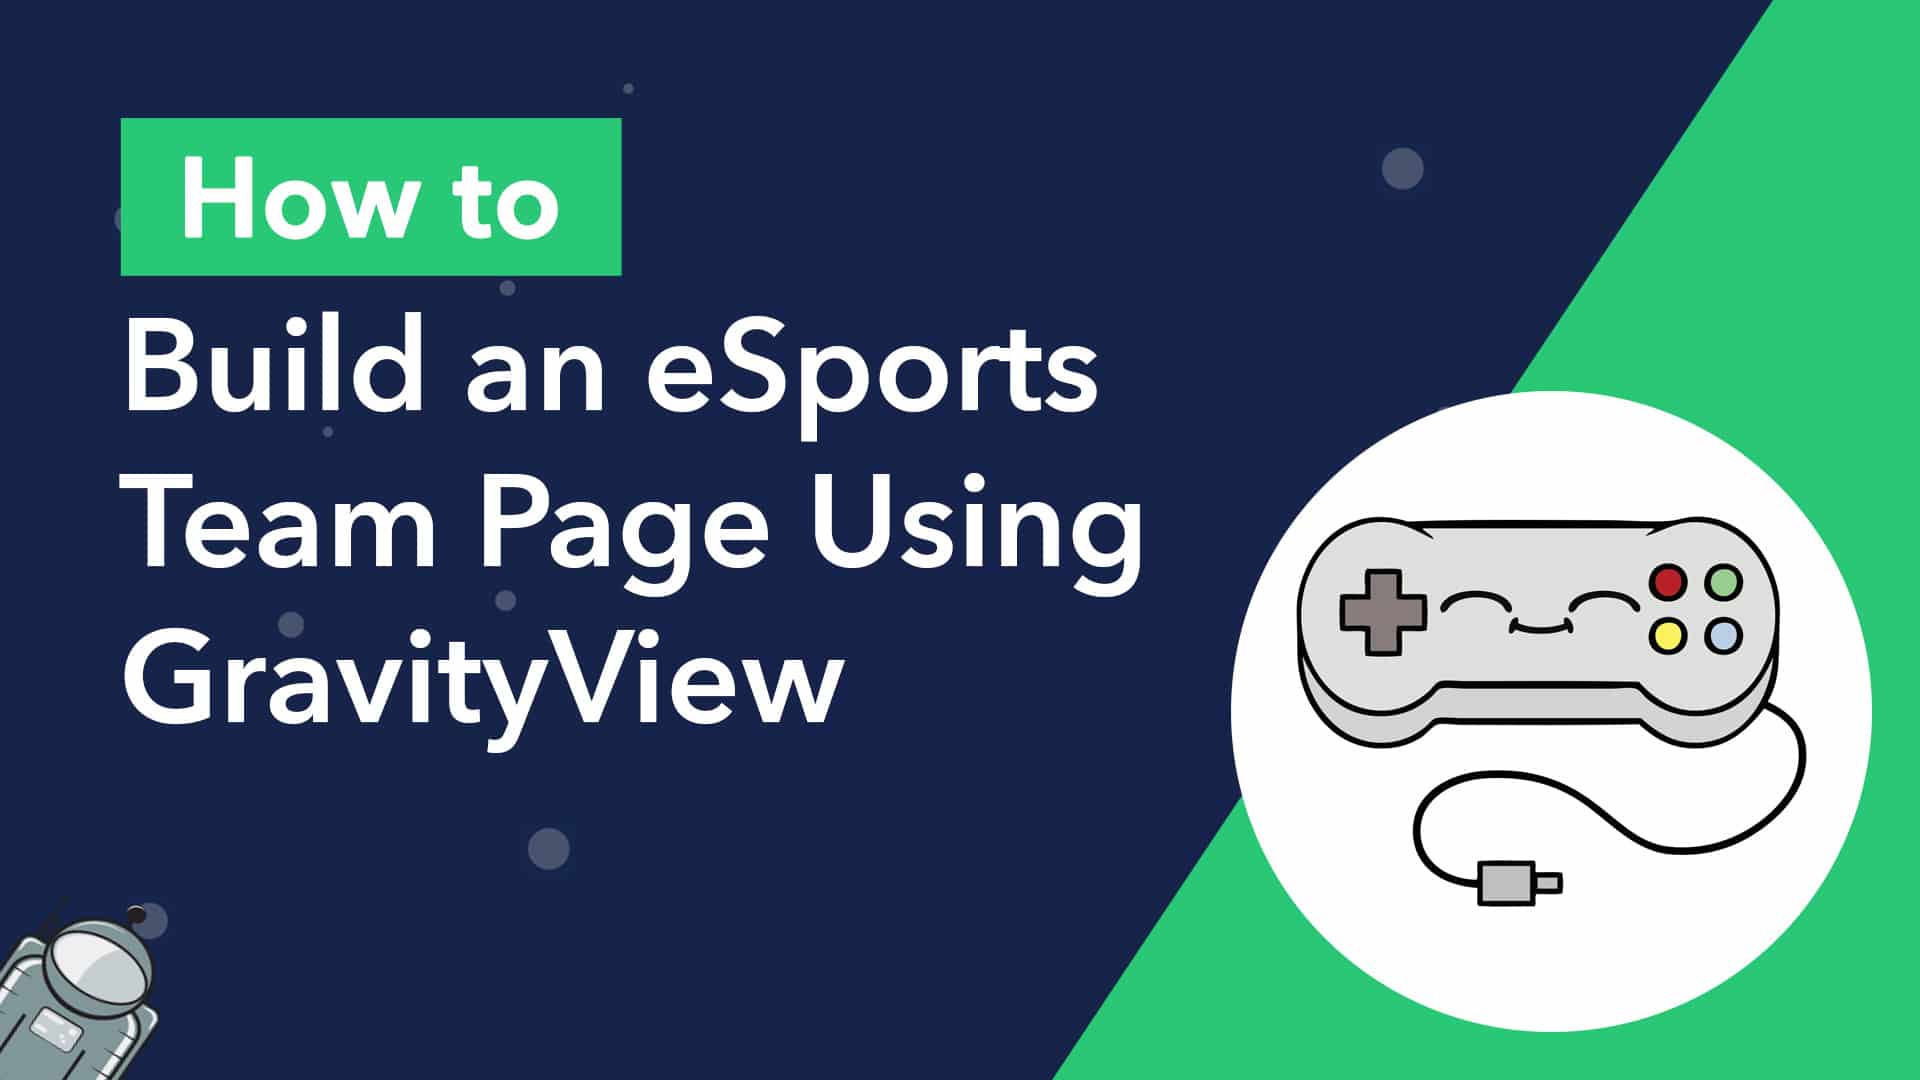 GravityView và Font Awesome Kit sẽ giúp bạn xây dựng một trang web đội eSports chuyên nghiệp và thu hút người chơi nhất. Với W3Schools, bạn sẽ học cách xây dựng và tối ưu hóa website của mình một cách dễ dàng và nhanh chóng. Hãy khám phá tính năng của GravityView và thấy rõ sự khác biệt của trang web của bạn so với những đối thủ cạnh tranh.